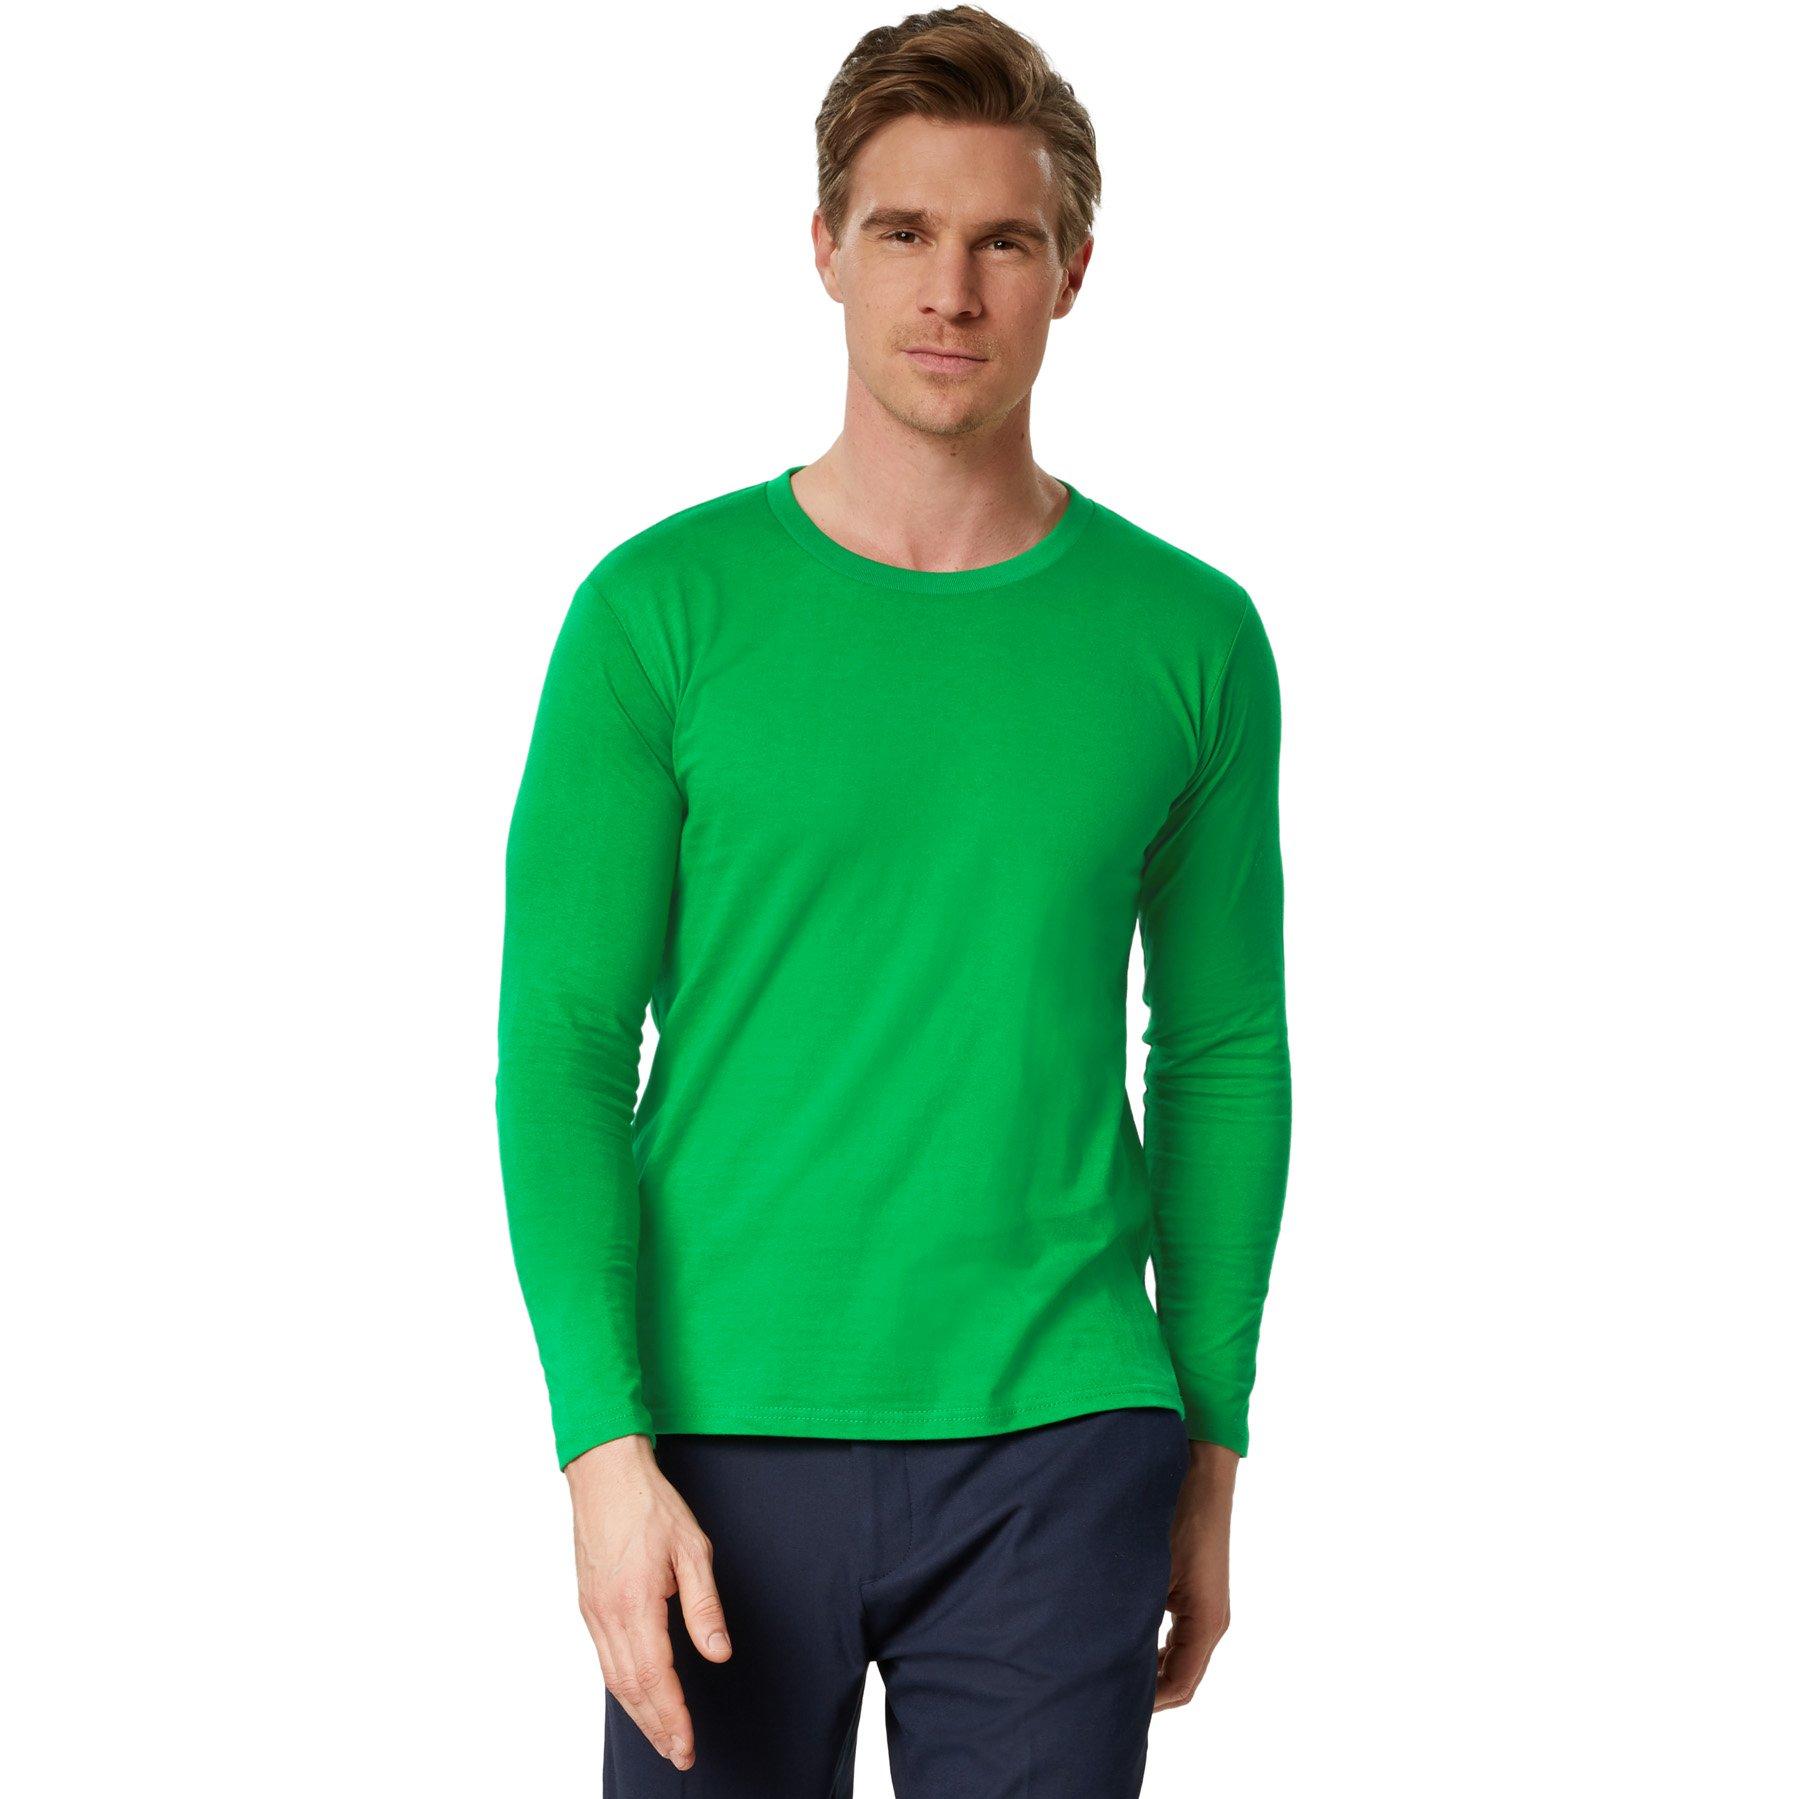 Langarm-shirt Männer Herren Grün M von Tectake